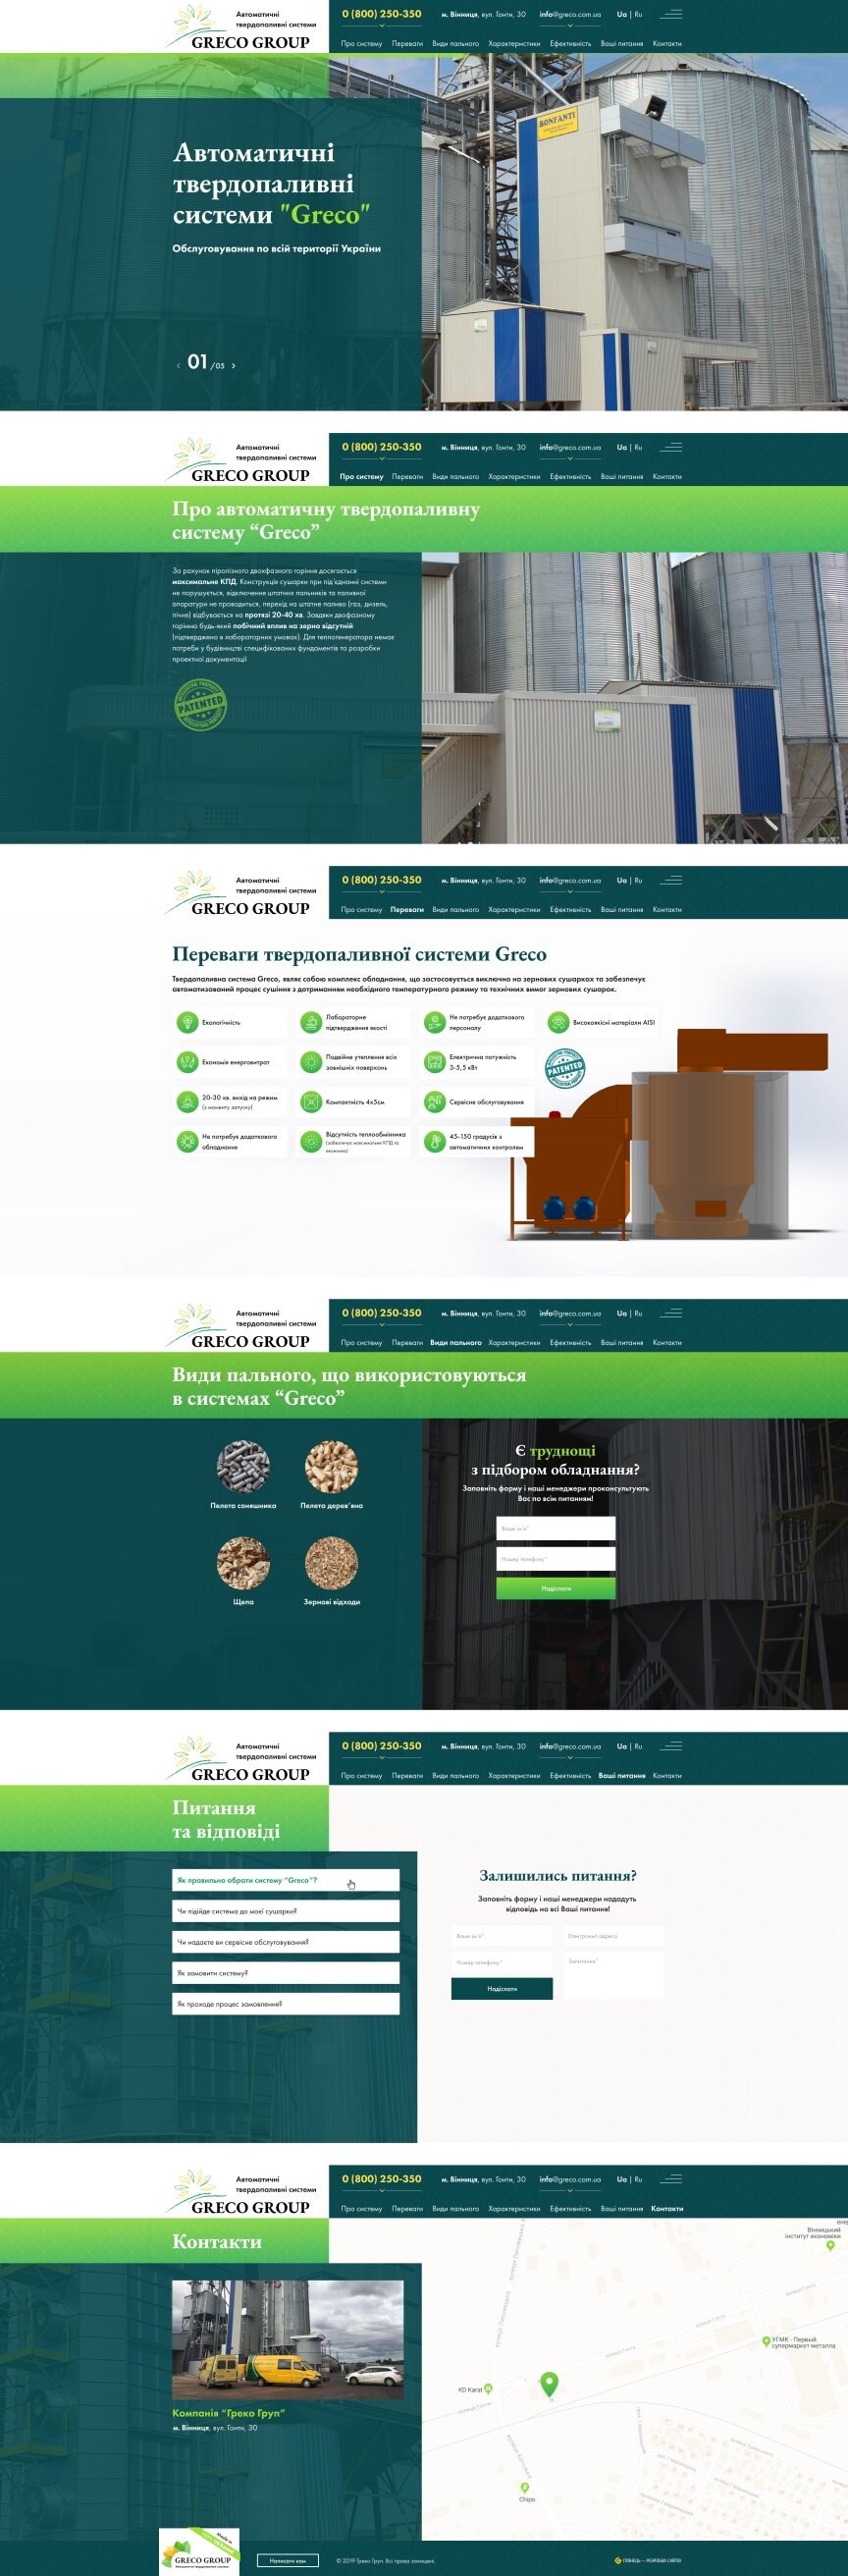 дизайн внутрених страниц на тему Аграрная промышленность — Сайт для компании ГрекоГруп 10